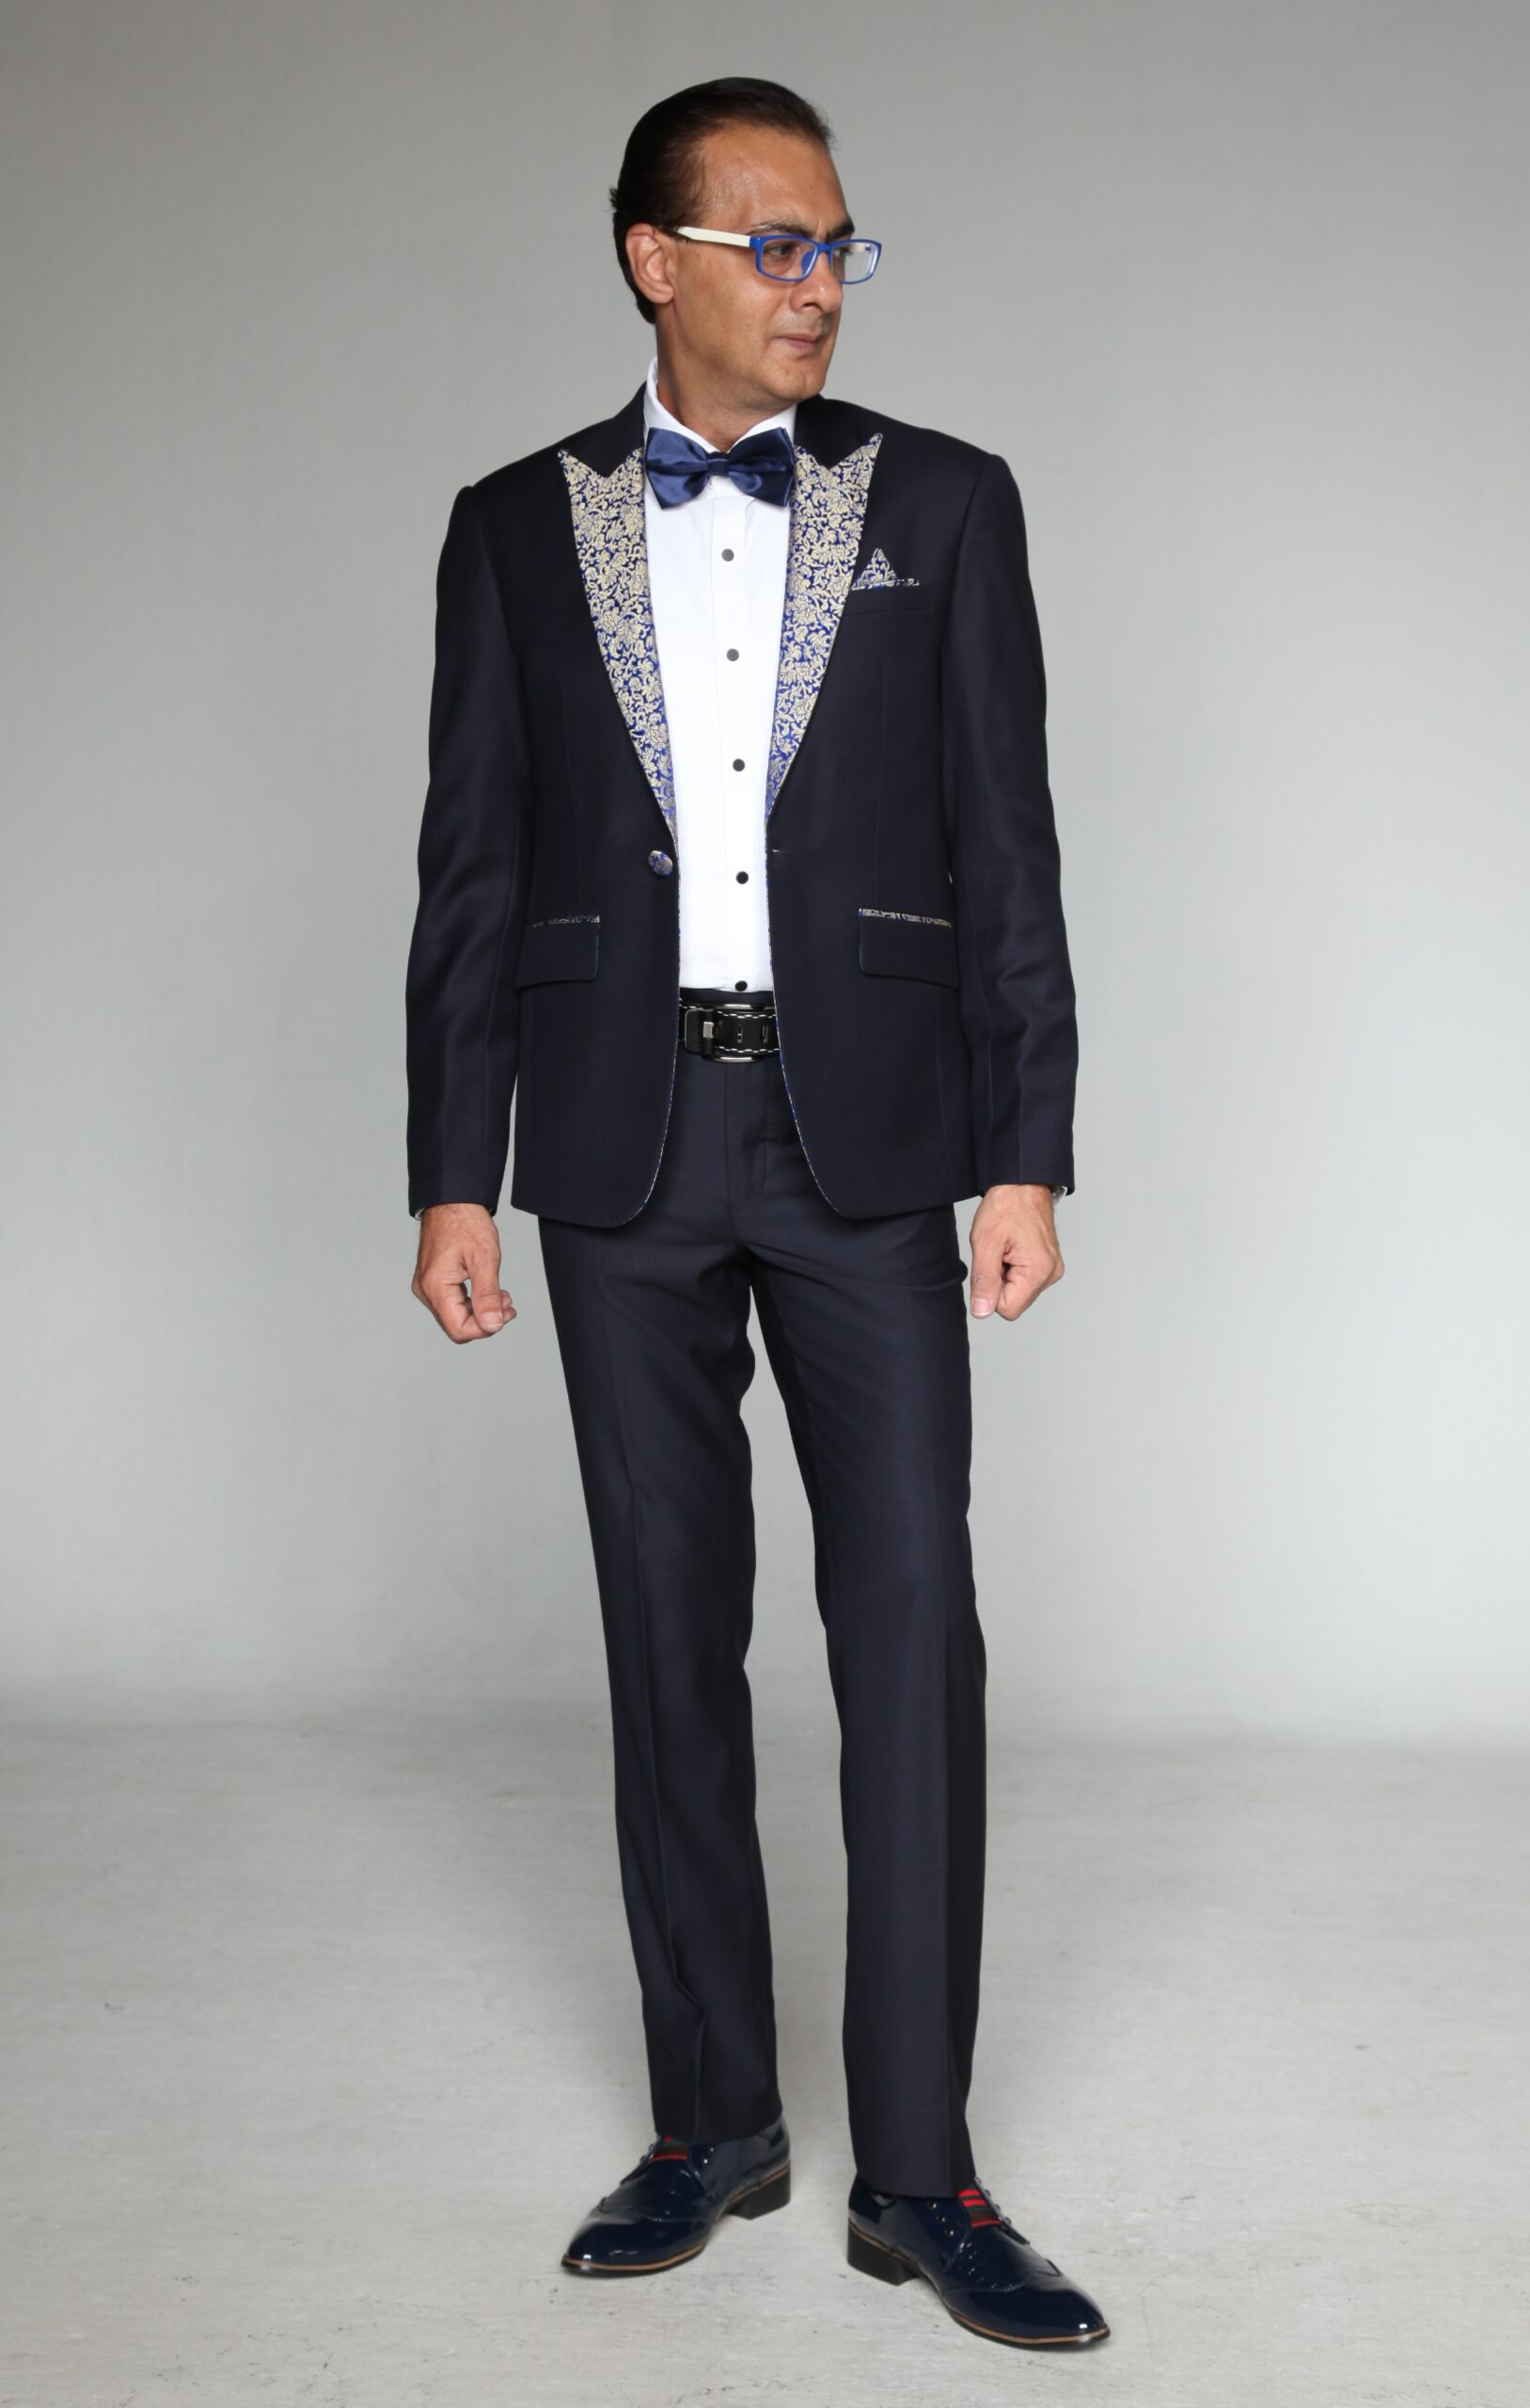 MST-5021-02-rent_rental_hire_tuxedo_suit_black_tie_suit_designer_suits_shop_tailor_tailors_singapore_wedding